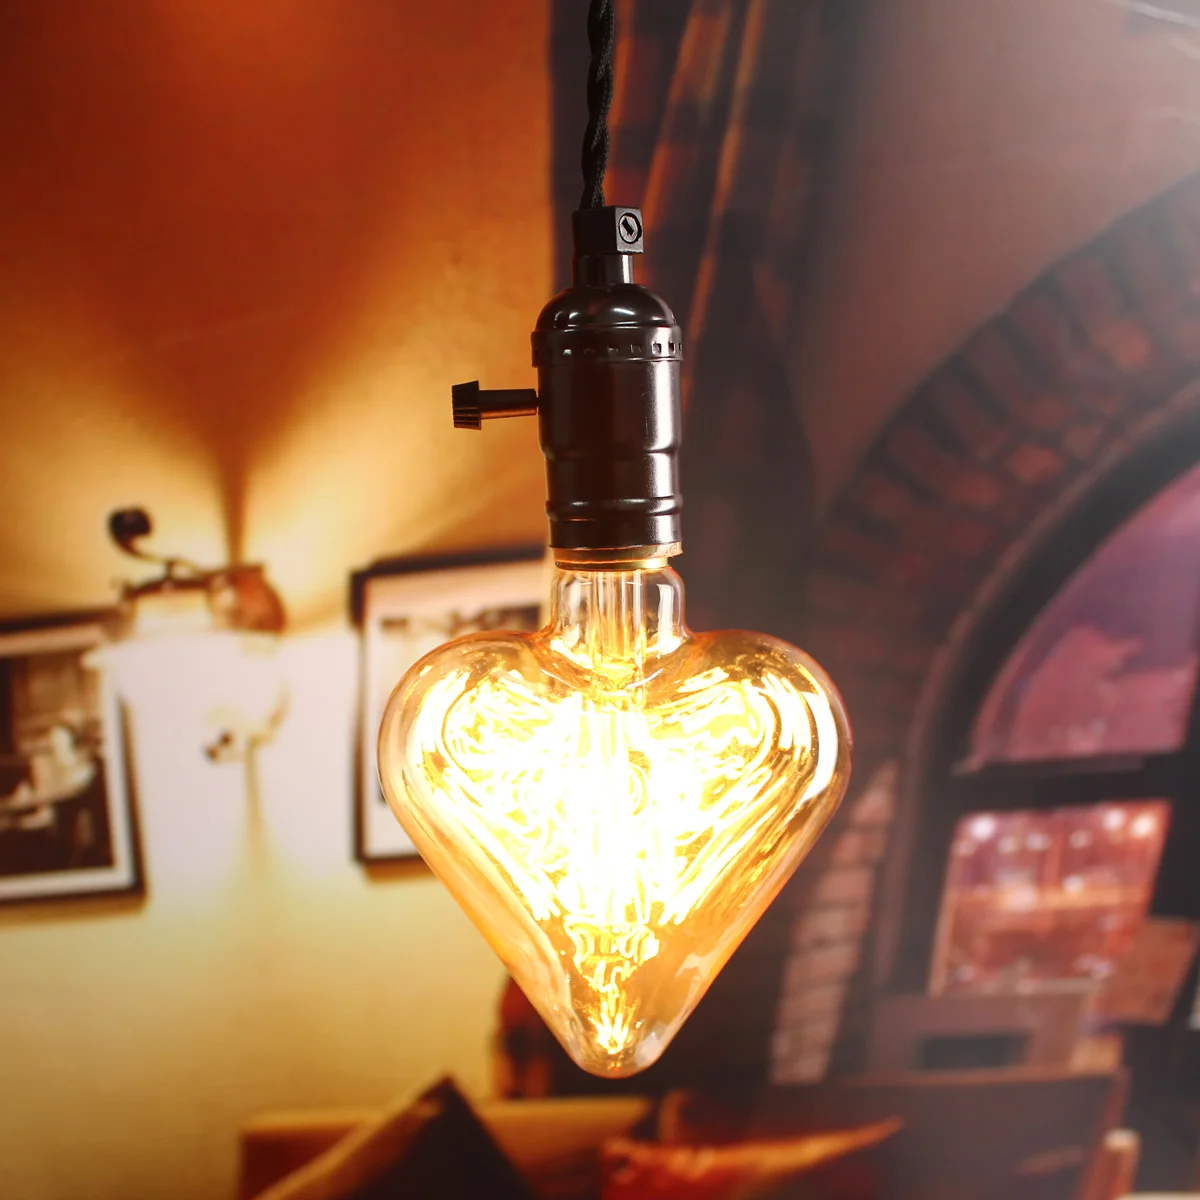 220V E27 40W электрическая лампочка эдисона лампа накаливания светильник в стиле ретро Винтаж лампа звезда с принтом «сердце» с Форма лампы